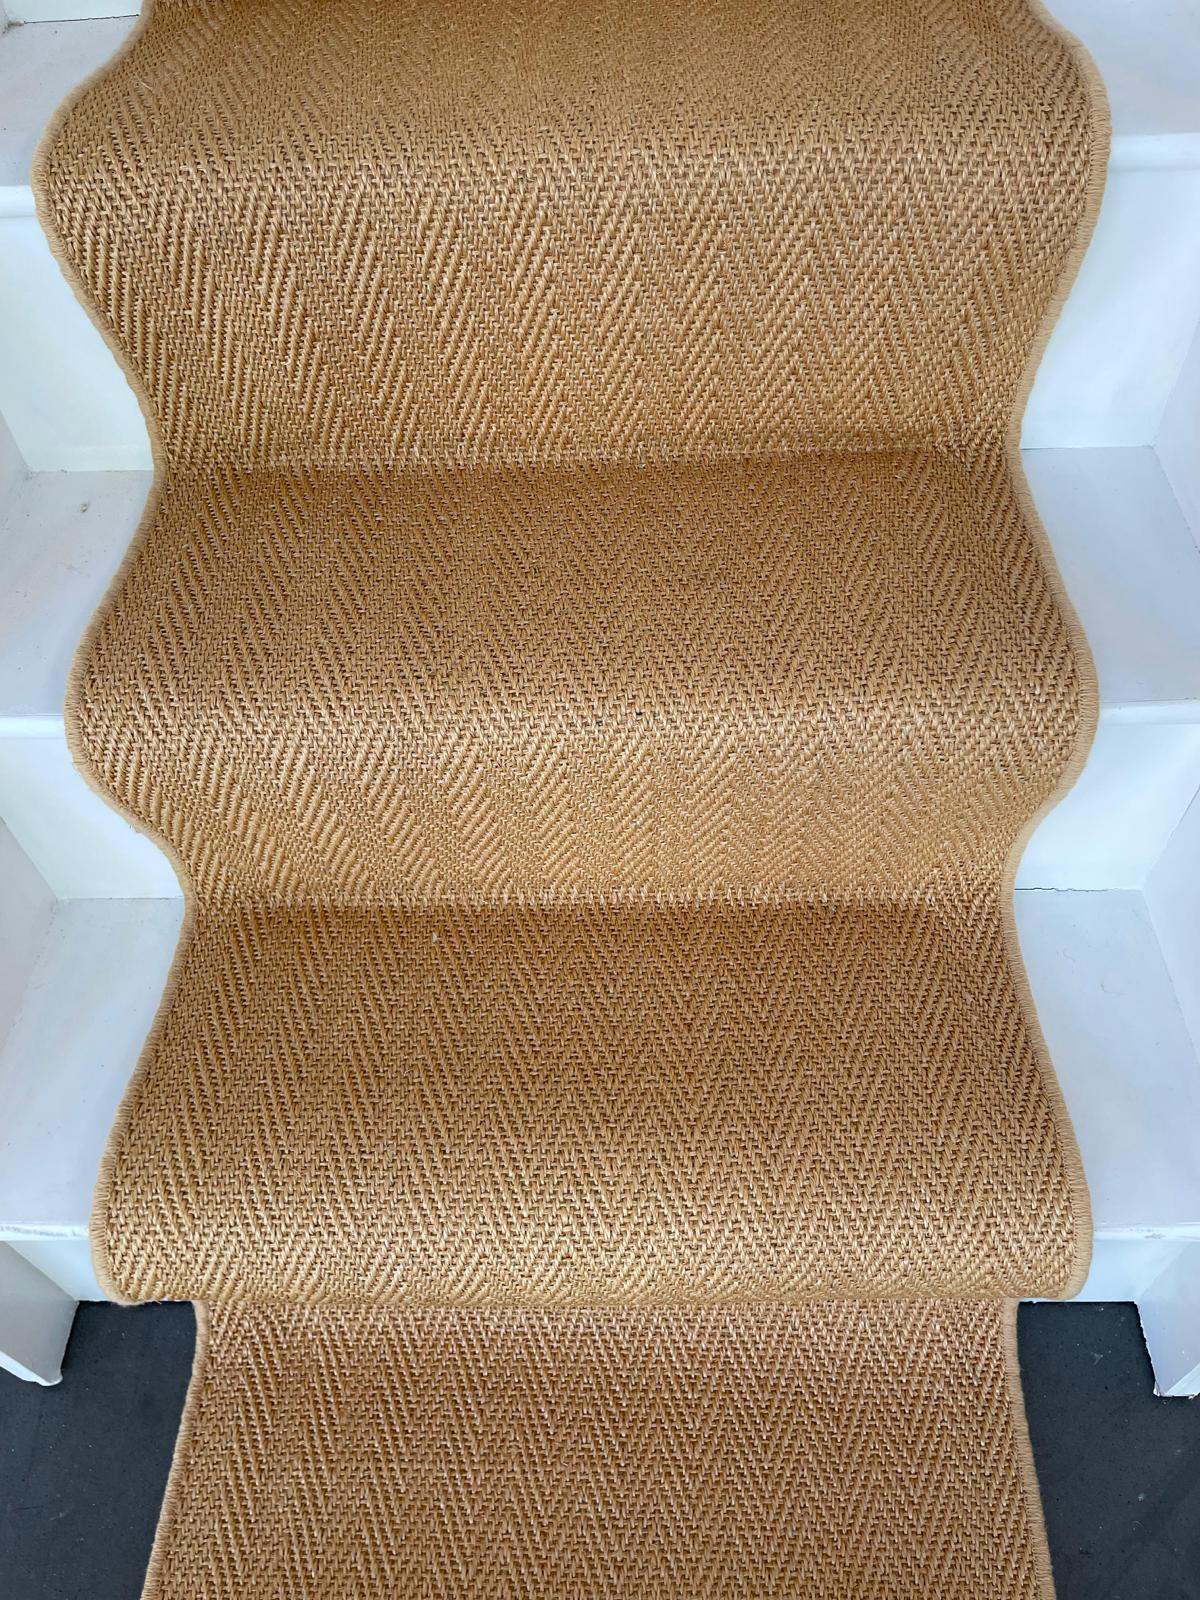 Sisal herringbone carpet stair runner from Alternative Flooring Hampton range